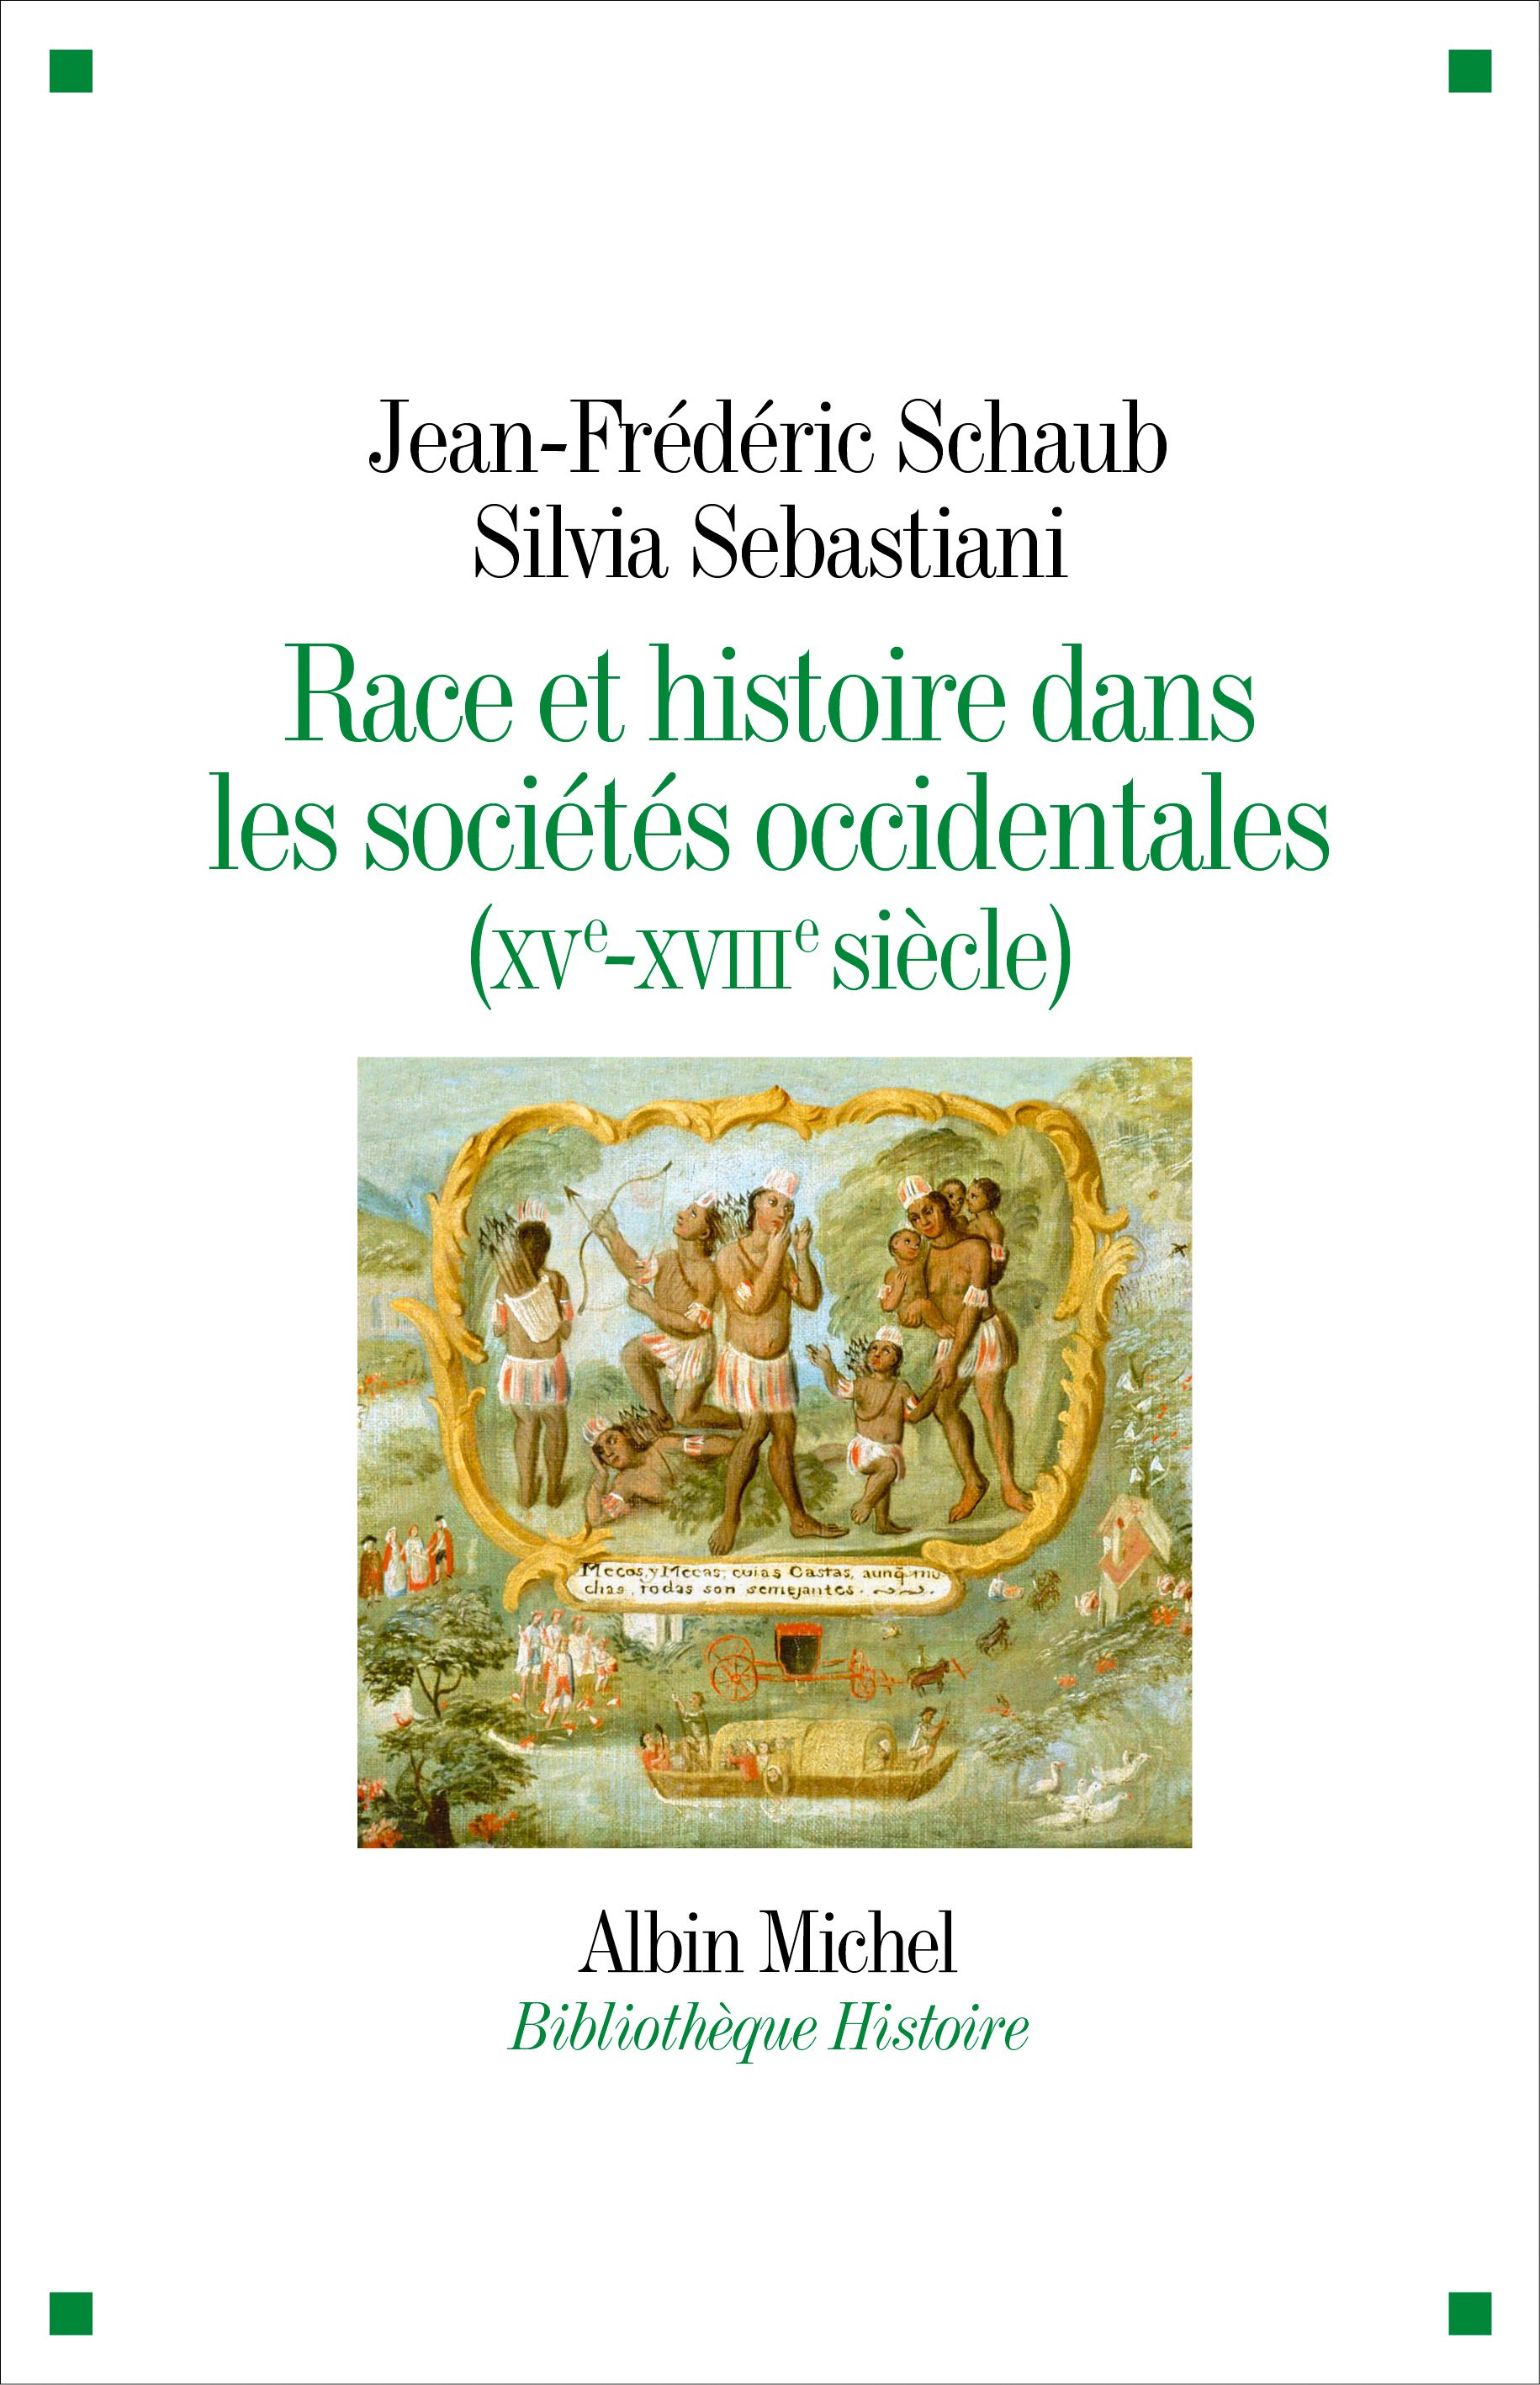 Autour de l'ouvrage de Jean-Frédéric Schaub et Silvia Sebastiani, Race et histoire dans les sociétés occidentales (XVe-XVIIIe siècle)